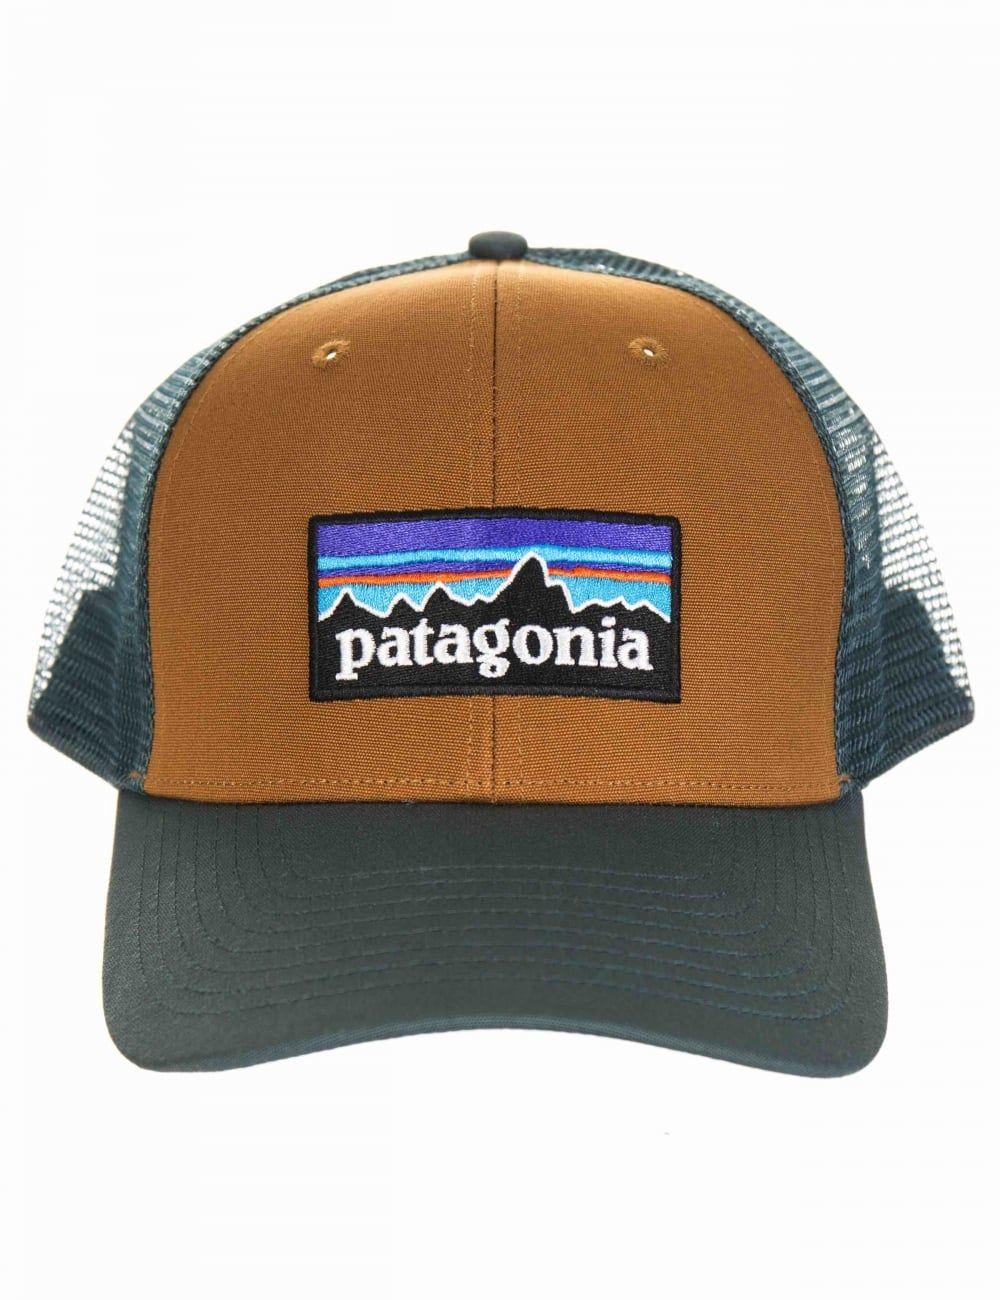 Patagonia Bear Logo - Patagonia P-6 Logo Trucker Hat - Bear Brown - Patagonia from iConsume UK